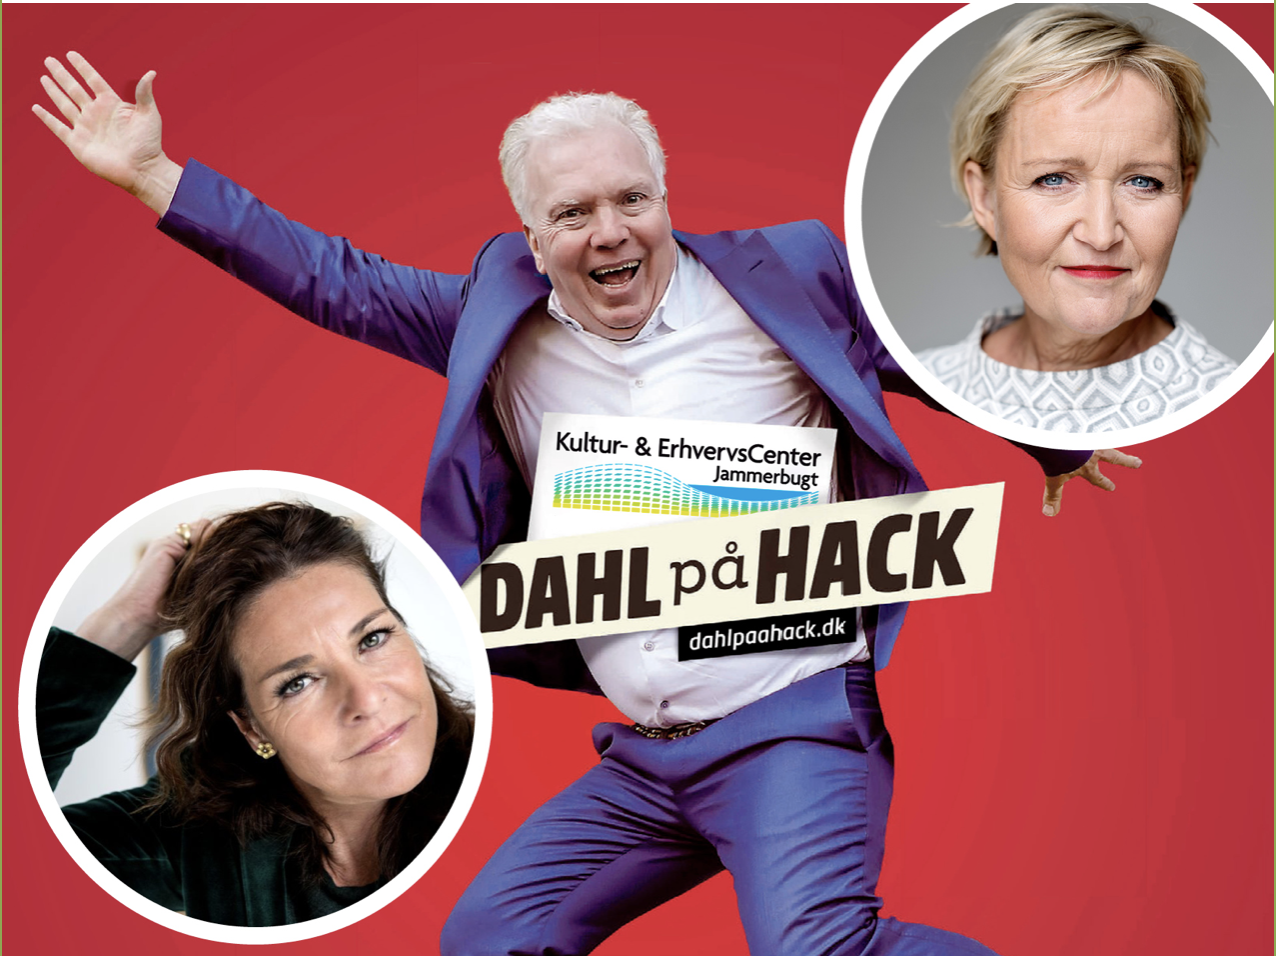 Bliv publikum på Dahl på hack Lis Sørensen og Tine Gøtzsche